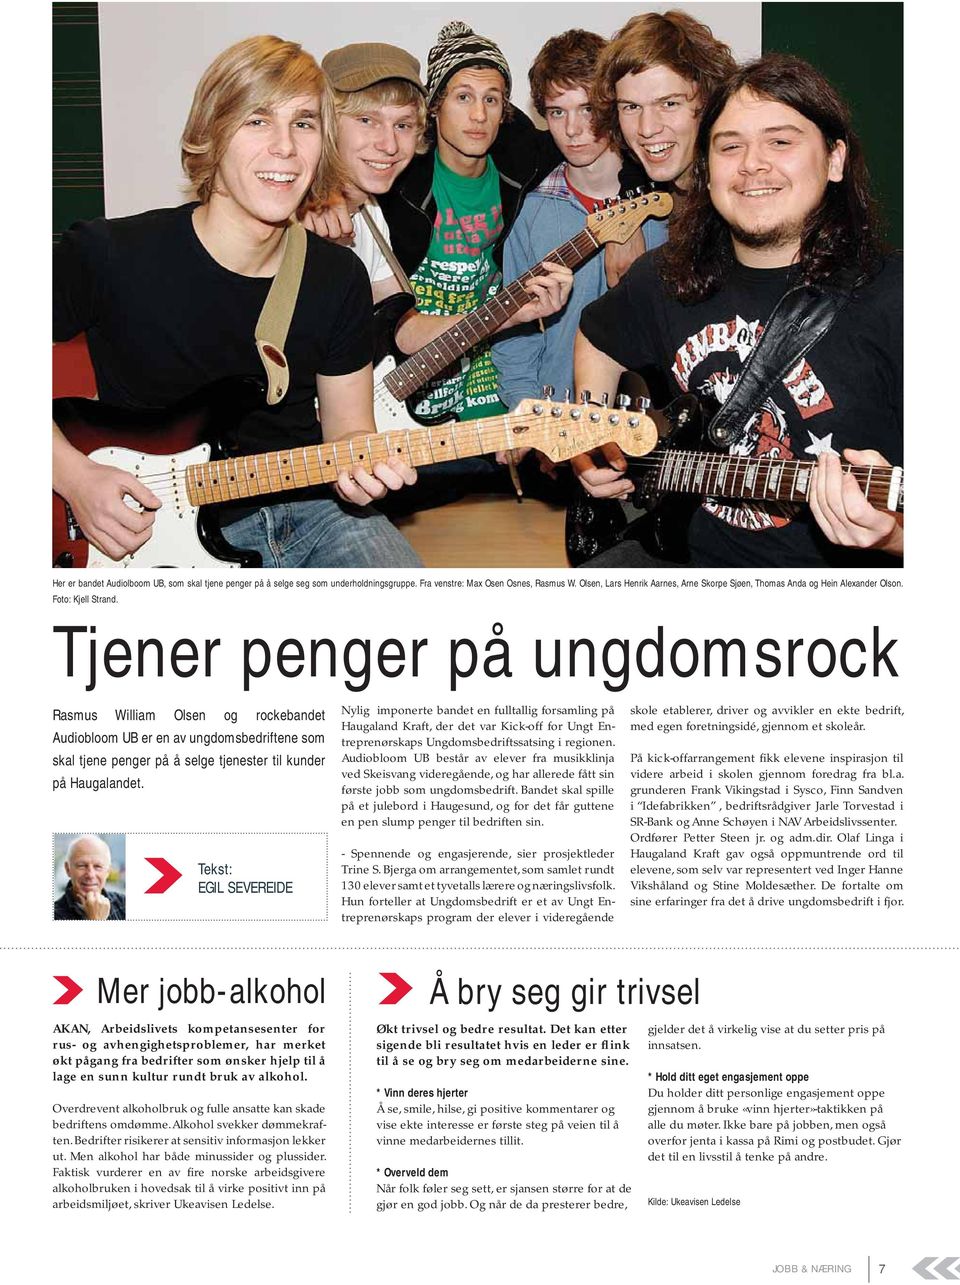 Tjener penger på ungdomsrock Rasmus William Olsen og rockebandet Audiobloom UB er en av ungdomsbedriftene som skal tjene penger på å selge tjenester til kunder på Haugalandet.